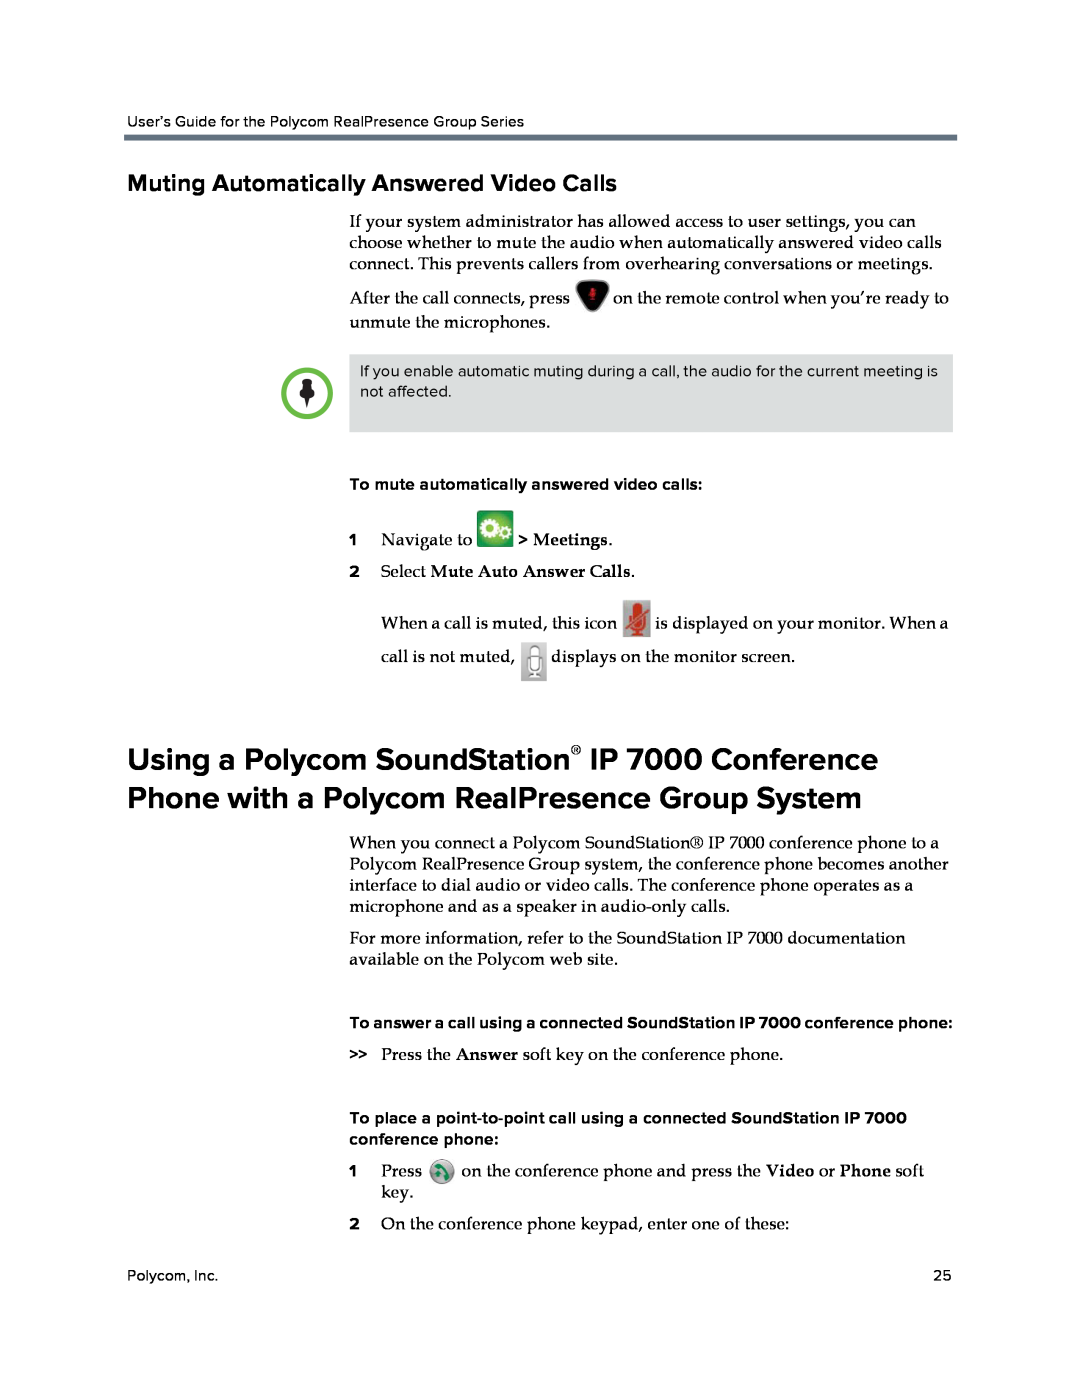 Polycom P001 manual Muting Automatically Answered Video Calls, To mute automatically answered video calls 